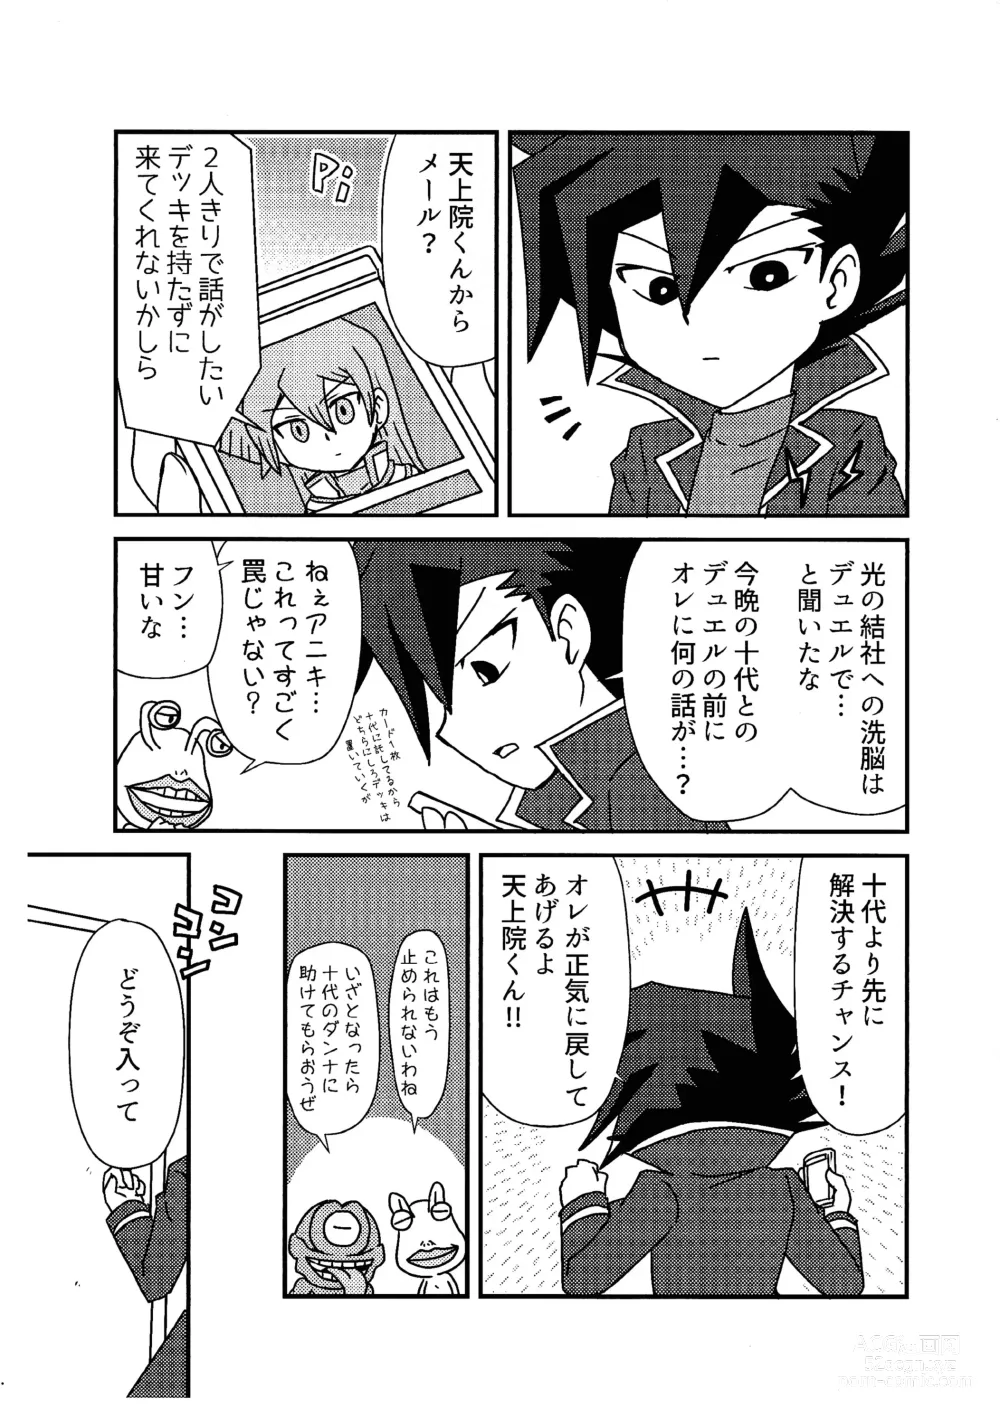 Page 2 of doujinshi Kuro no ore ga mata shiroku some rareyou to shite iru yodaga!?